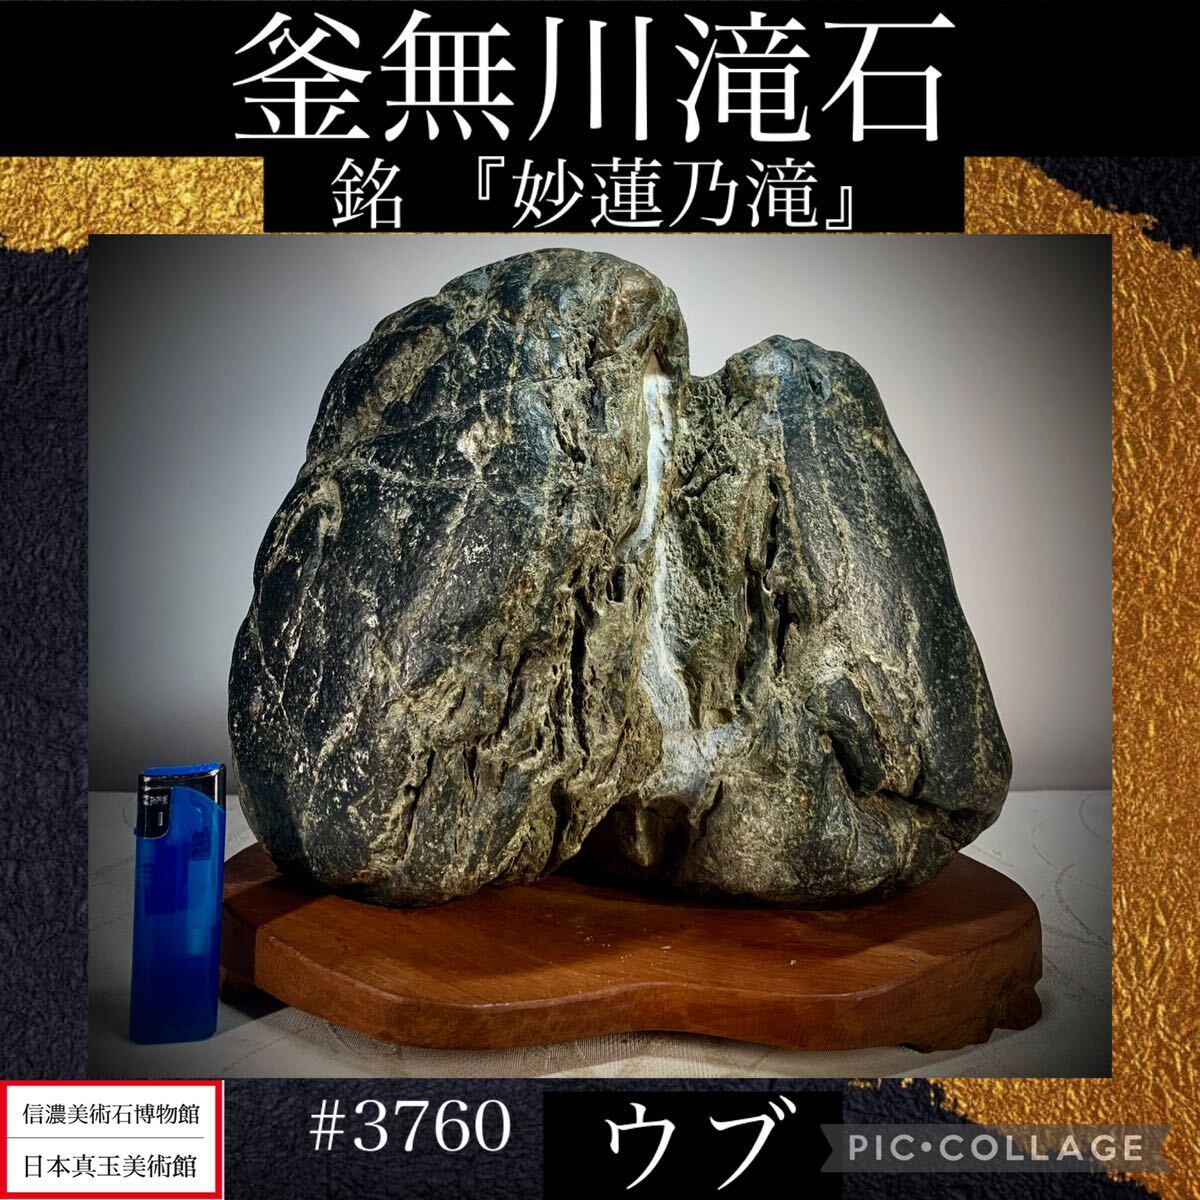 [ доверие . изобразительное искусство камень музей ] камень суйсеки бонсай котел нет река . камень ub ширина 28× высота 26× глубина 19(cm) 12.04kg антиквариат поддон камень старый изобразительное искусство оценка камень .. камень futoshi озеро камень China старый .3760